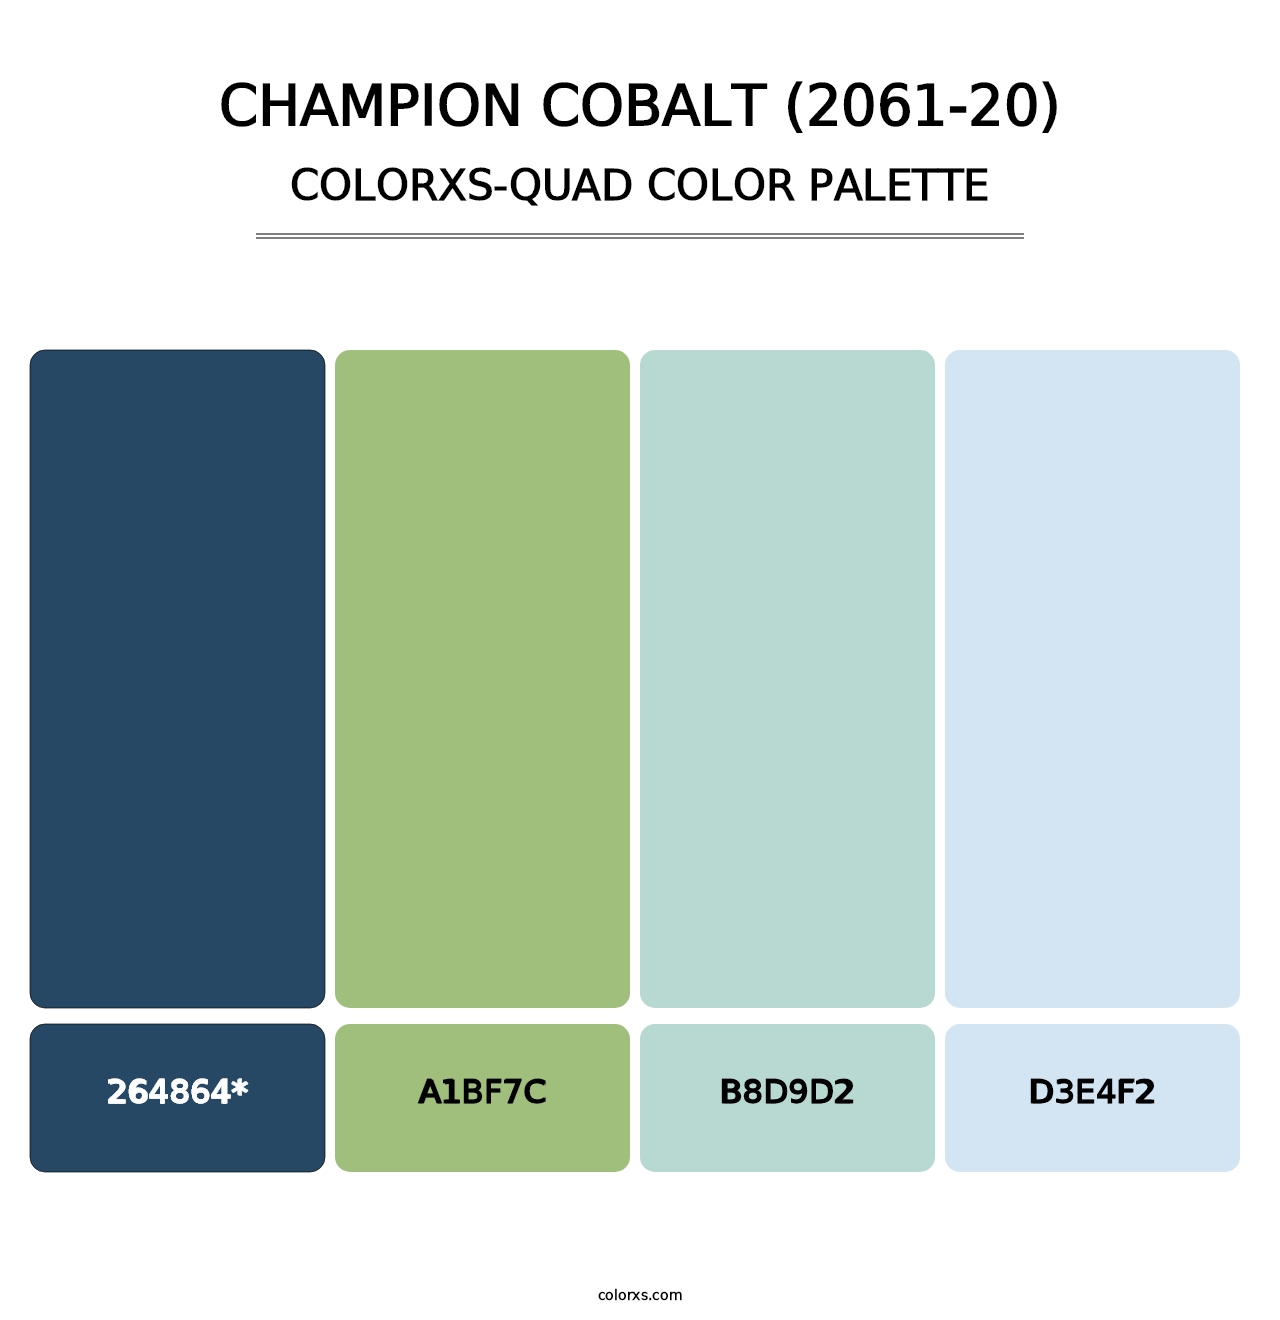 Champion Cobalt (2061-20) - Colorxs Quad Palette